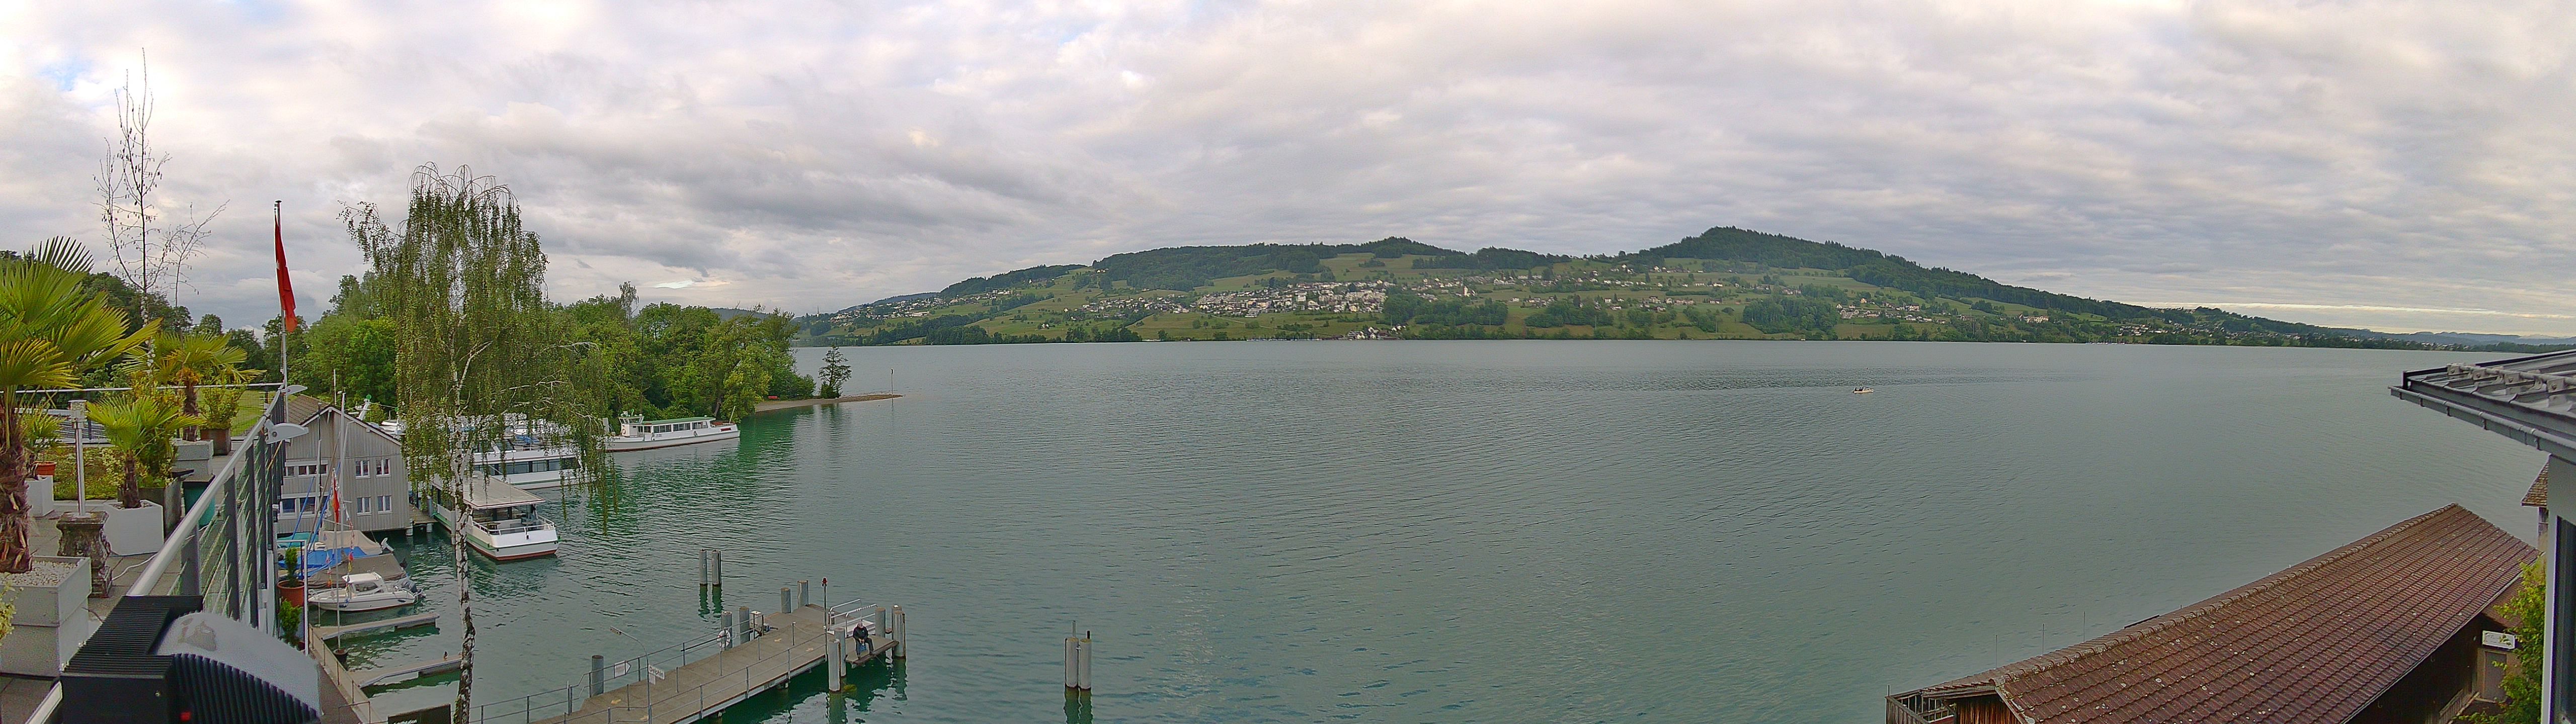 Hallwilersee: Lake Hallwil